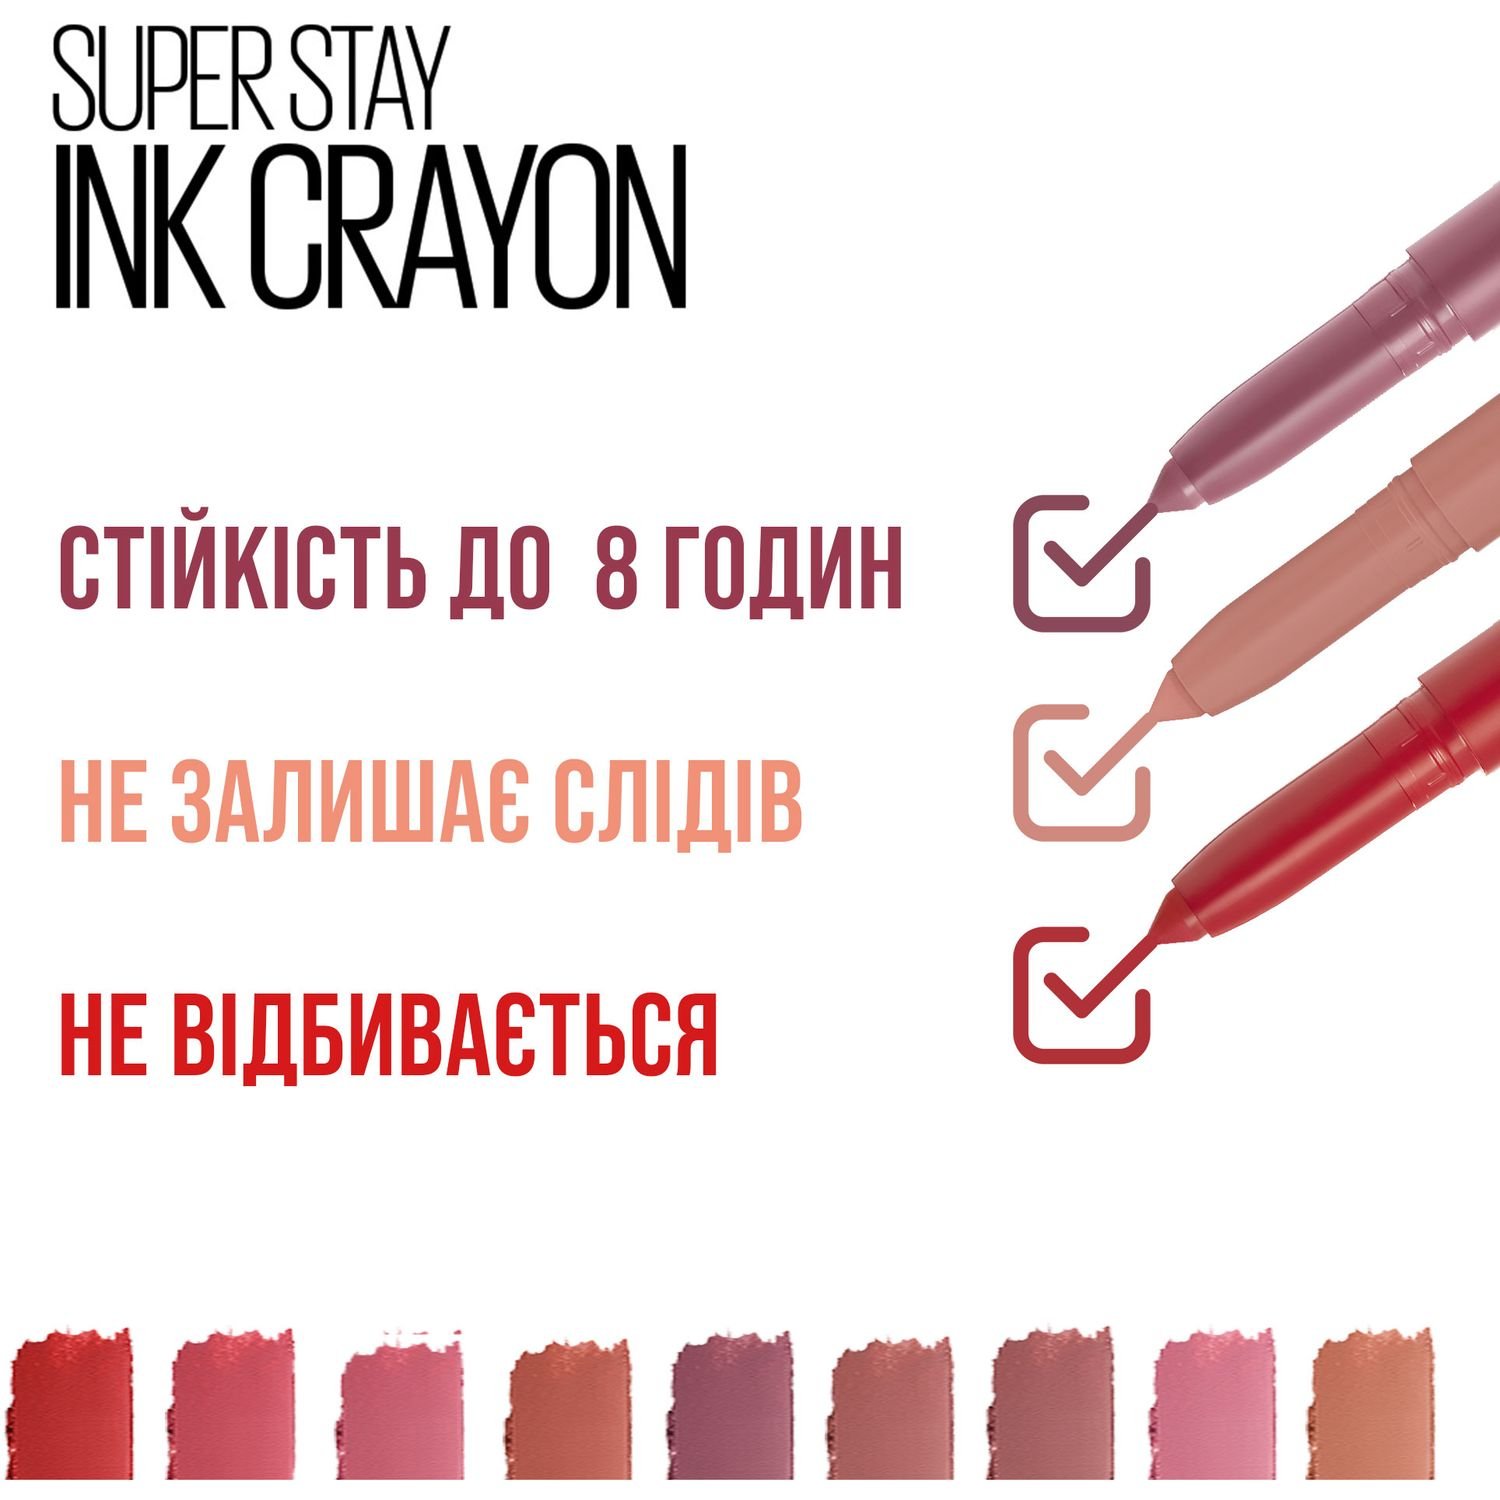 Губна помада-олівець Maybelline New York Super Stay Ink Crayon, відтінок 15 (Матовий), 2 г (B3190800) - фото 5